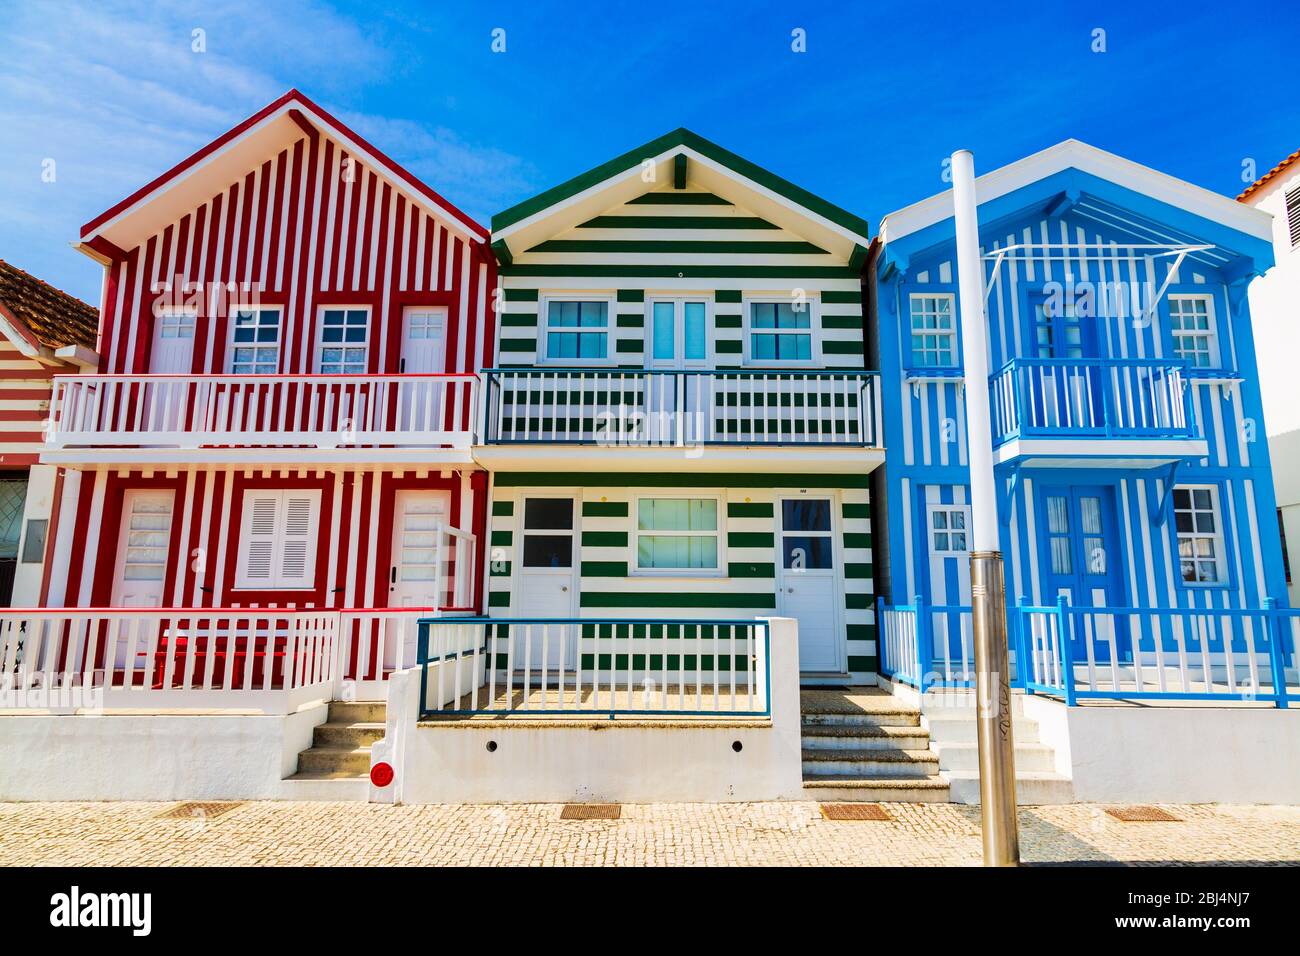 Costa Nova, Portugal: Maisons rayées colorées appelées Palheiros situé dans la station balnéaire sur la côte atlantique près d'Aveiro. Banque D'Images